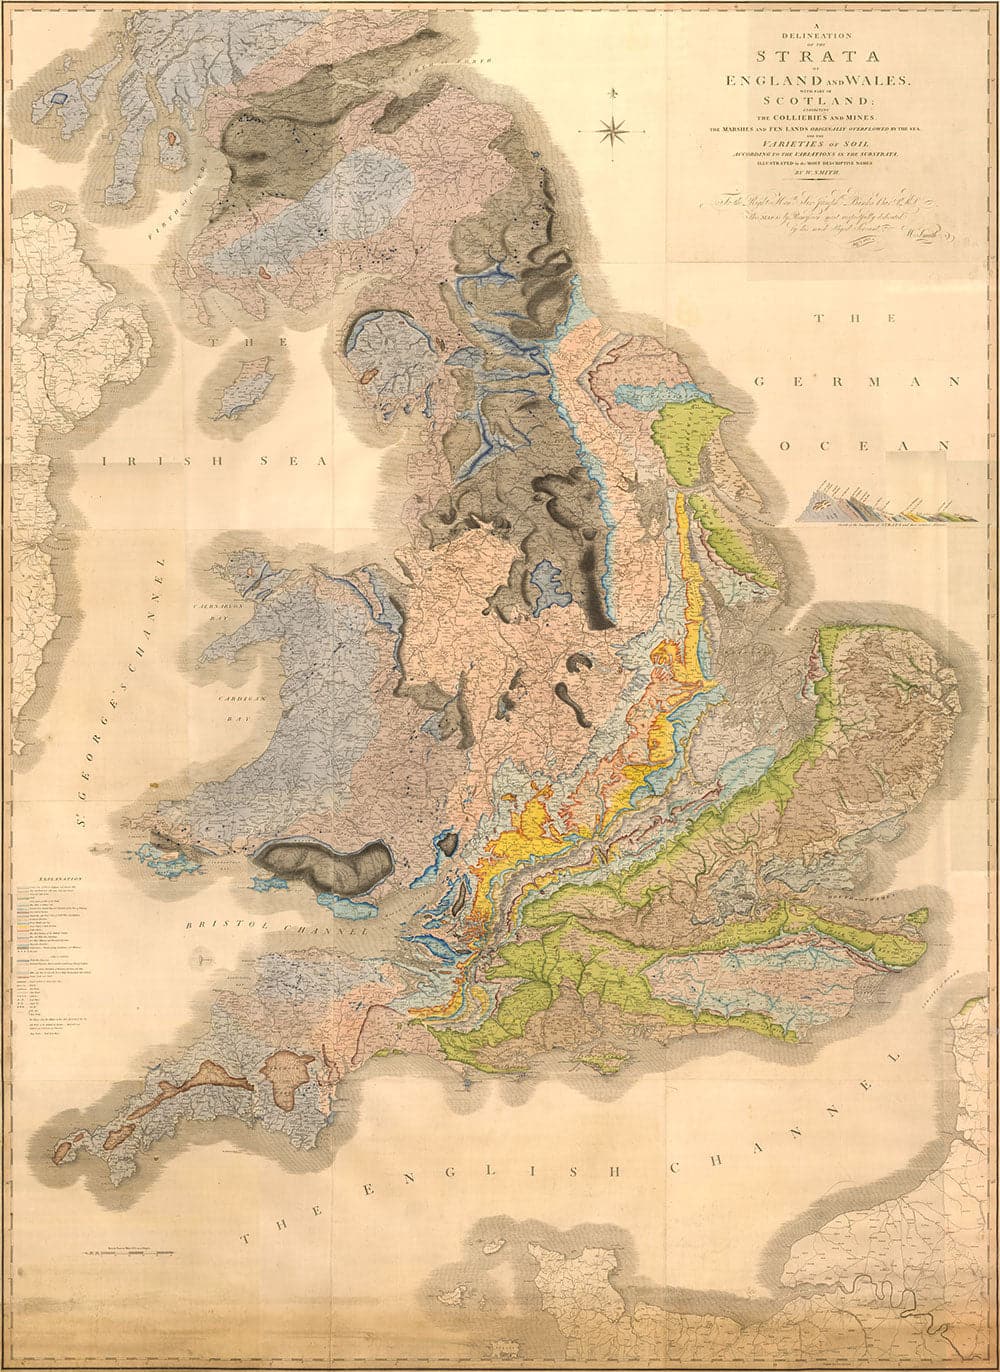 Rare William Smith Géologie Carte de l'Angleterre, Ecosse & Pays de Galles, 1815 - Jusqu'à 5 mètres (16ft) - Art mural vintage